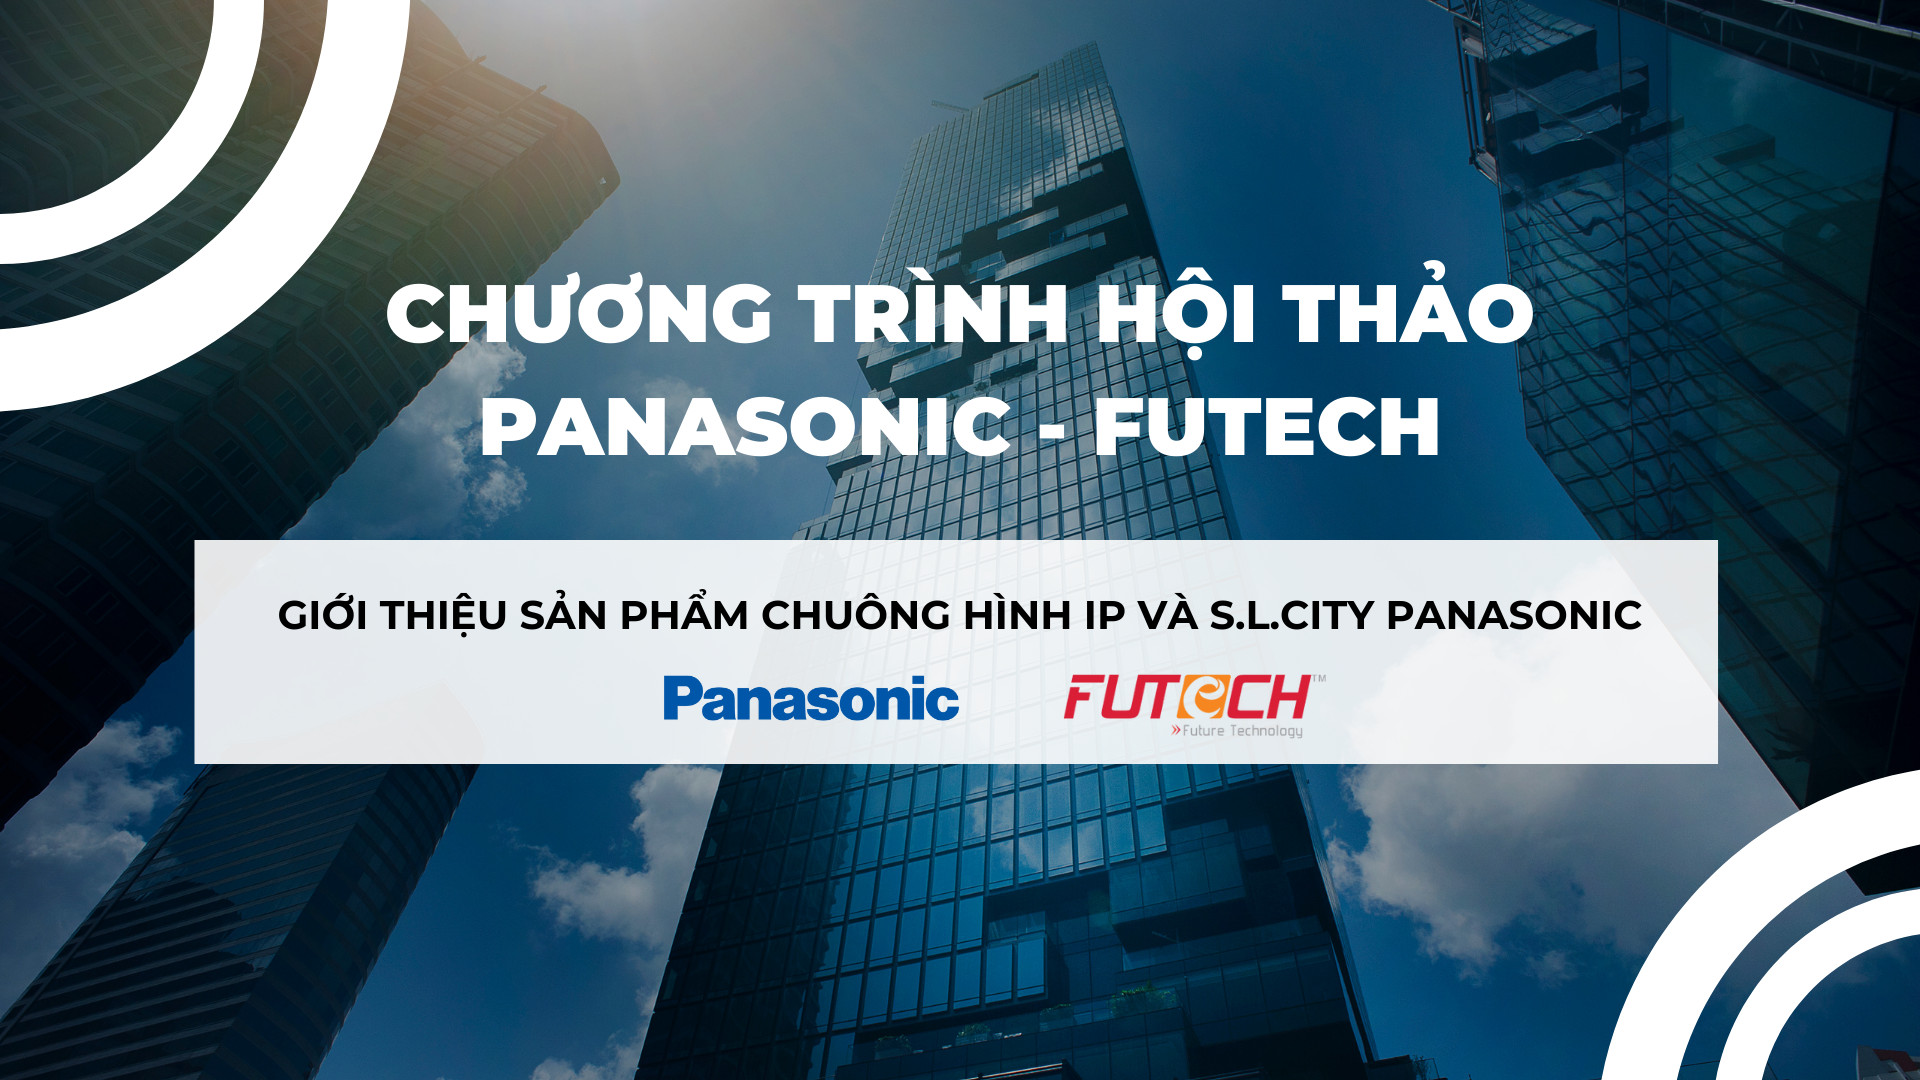 Chương trình hội thảo Panasonic - Futech